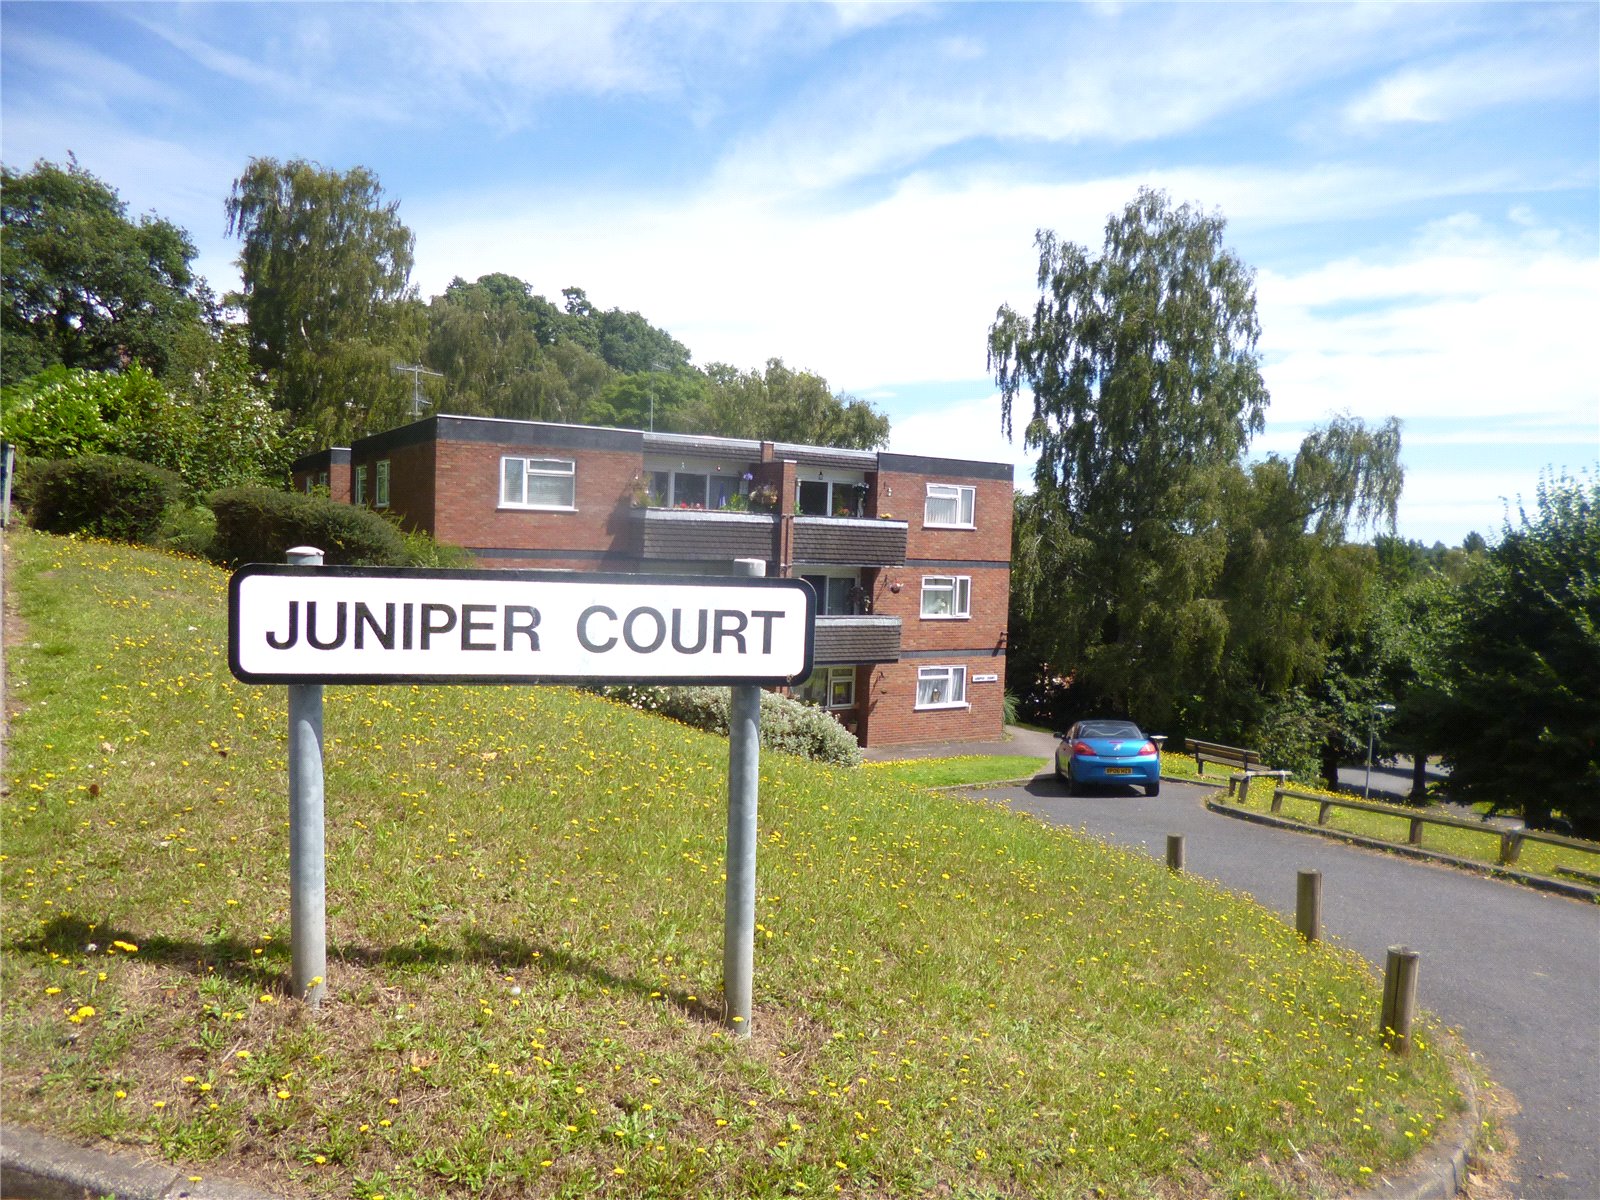 Juniper Court, Oldnall Road, Kidderminster, DY10